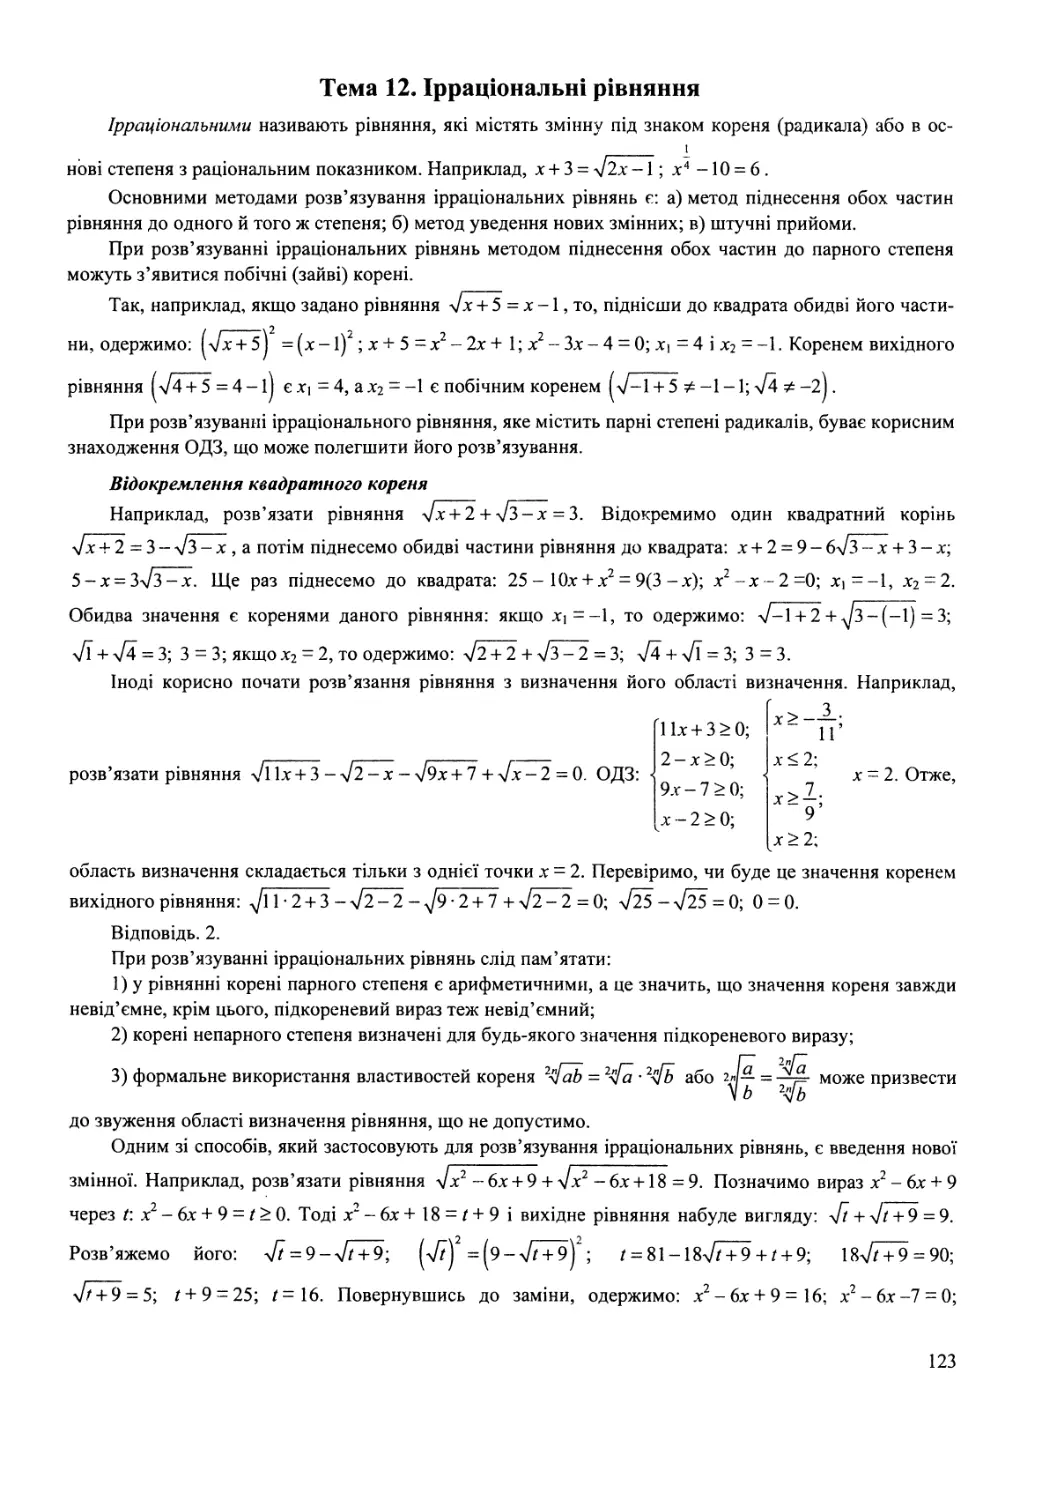 Тема 12. Ірраціональні рівняння